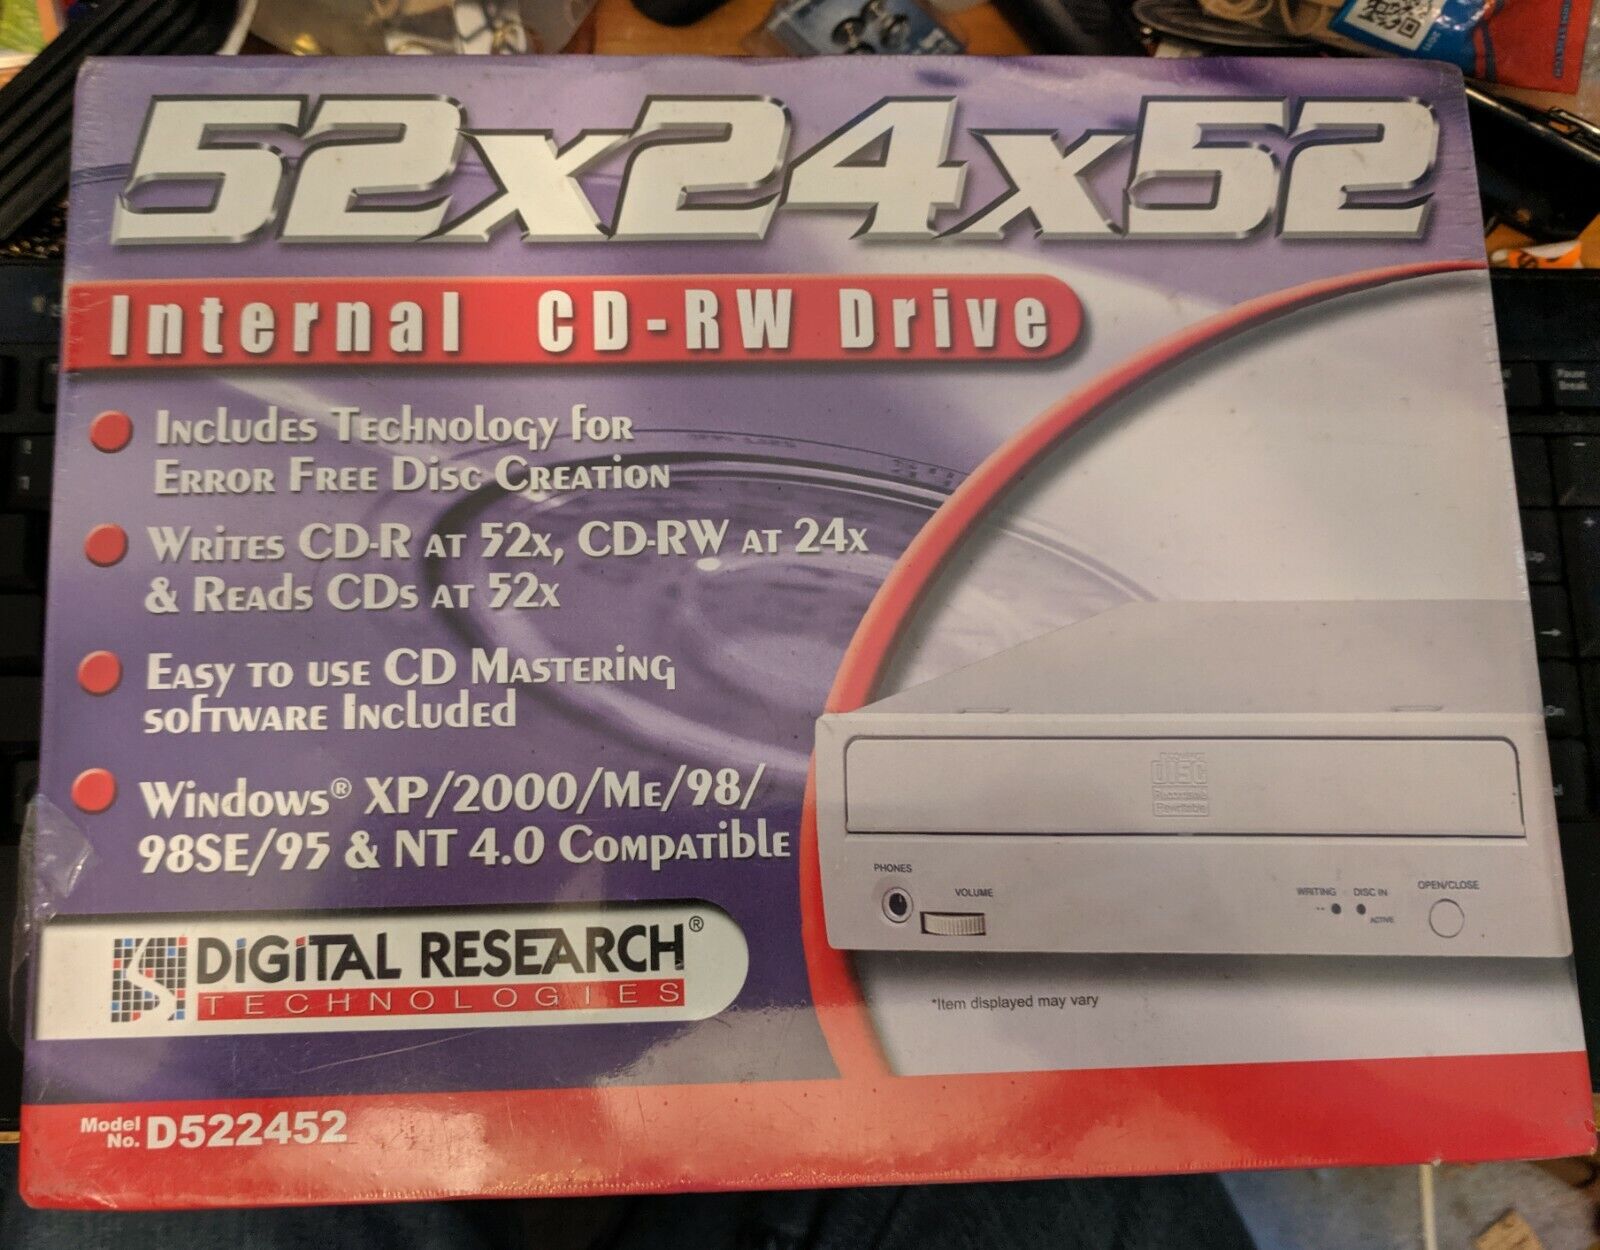 Digital Research Technologies - Internal CD-RW Drive 52x24x52 Model D522452